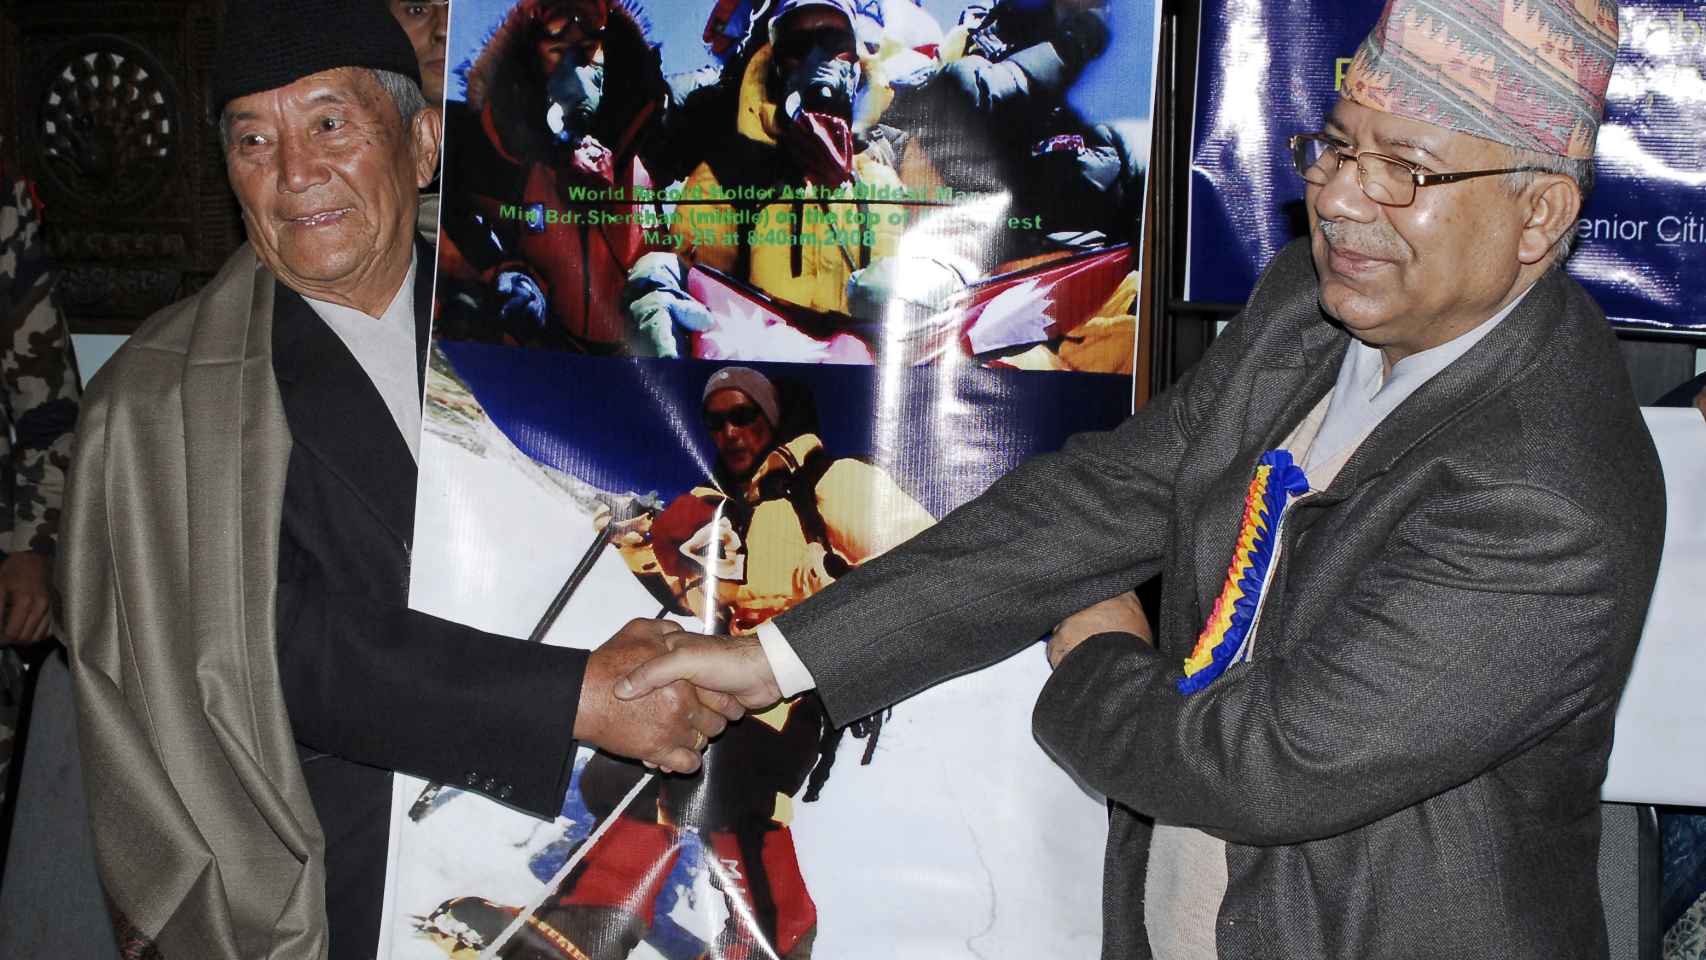 Noviembre de 2009: el primer ministro nepalí Madhav Kumar entrega a Min Bahadur Sherchan en Katmandú el certificado formal de hombre más anciano en subir el Everest.